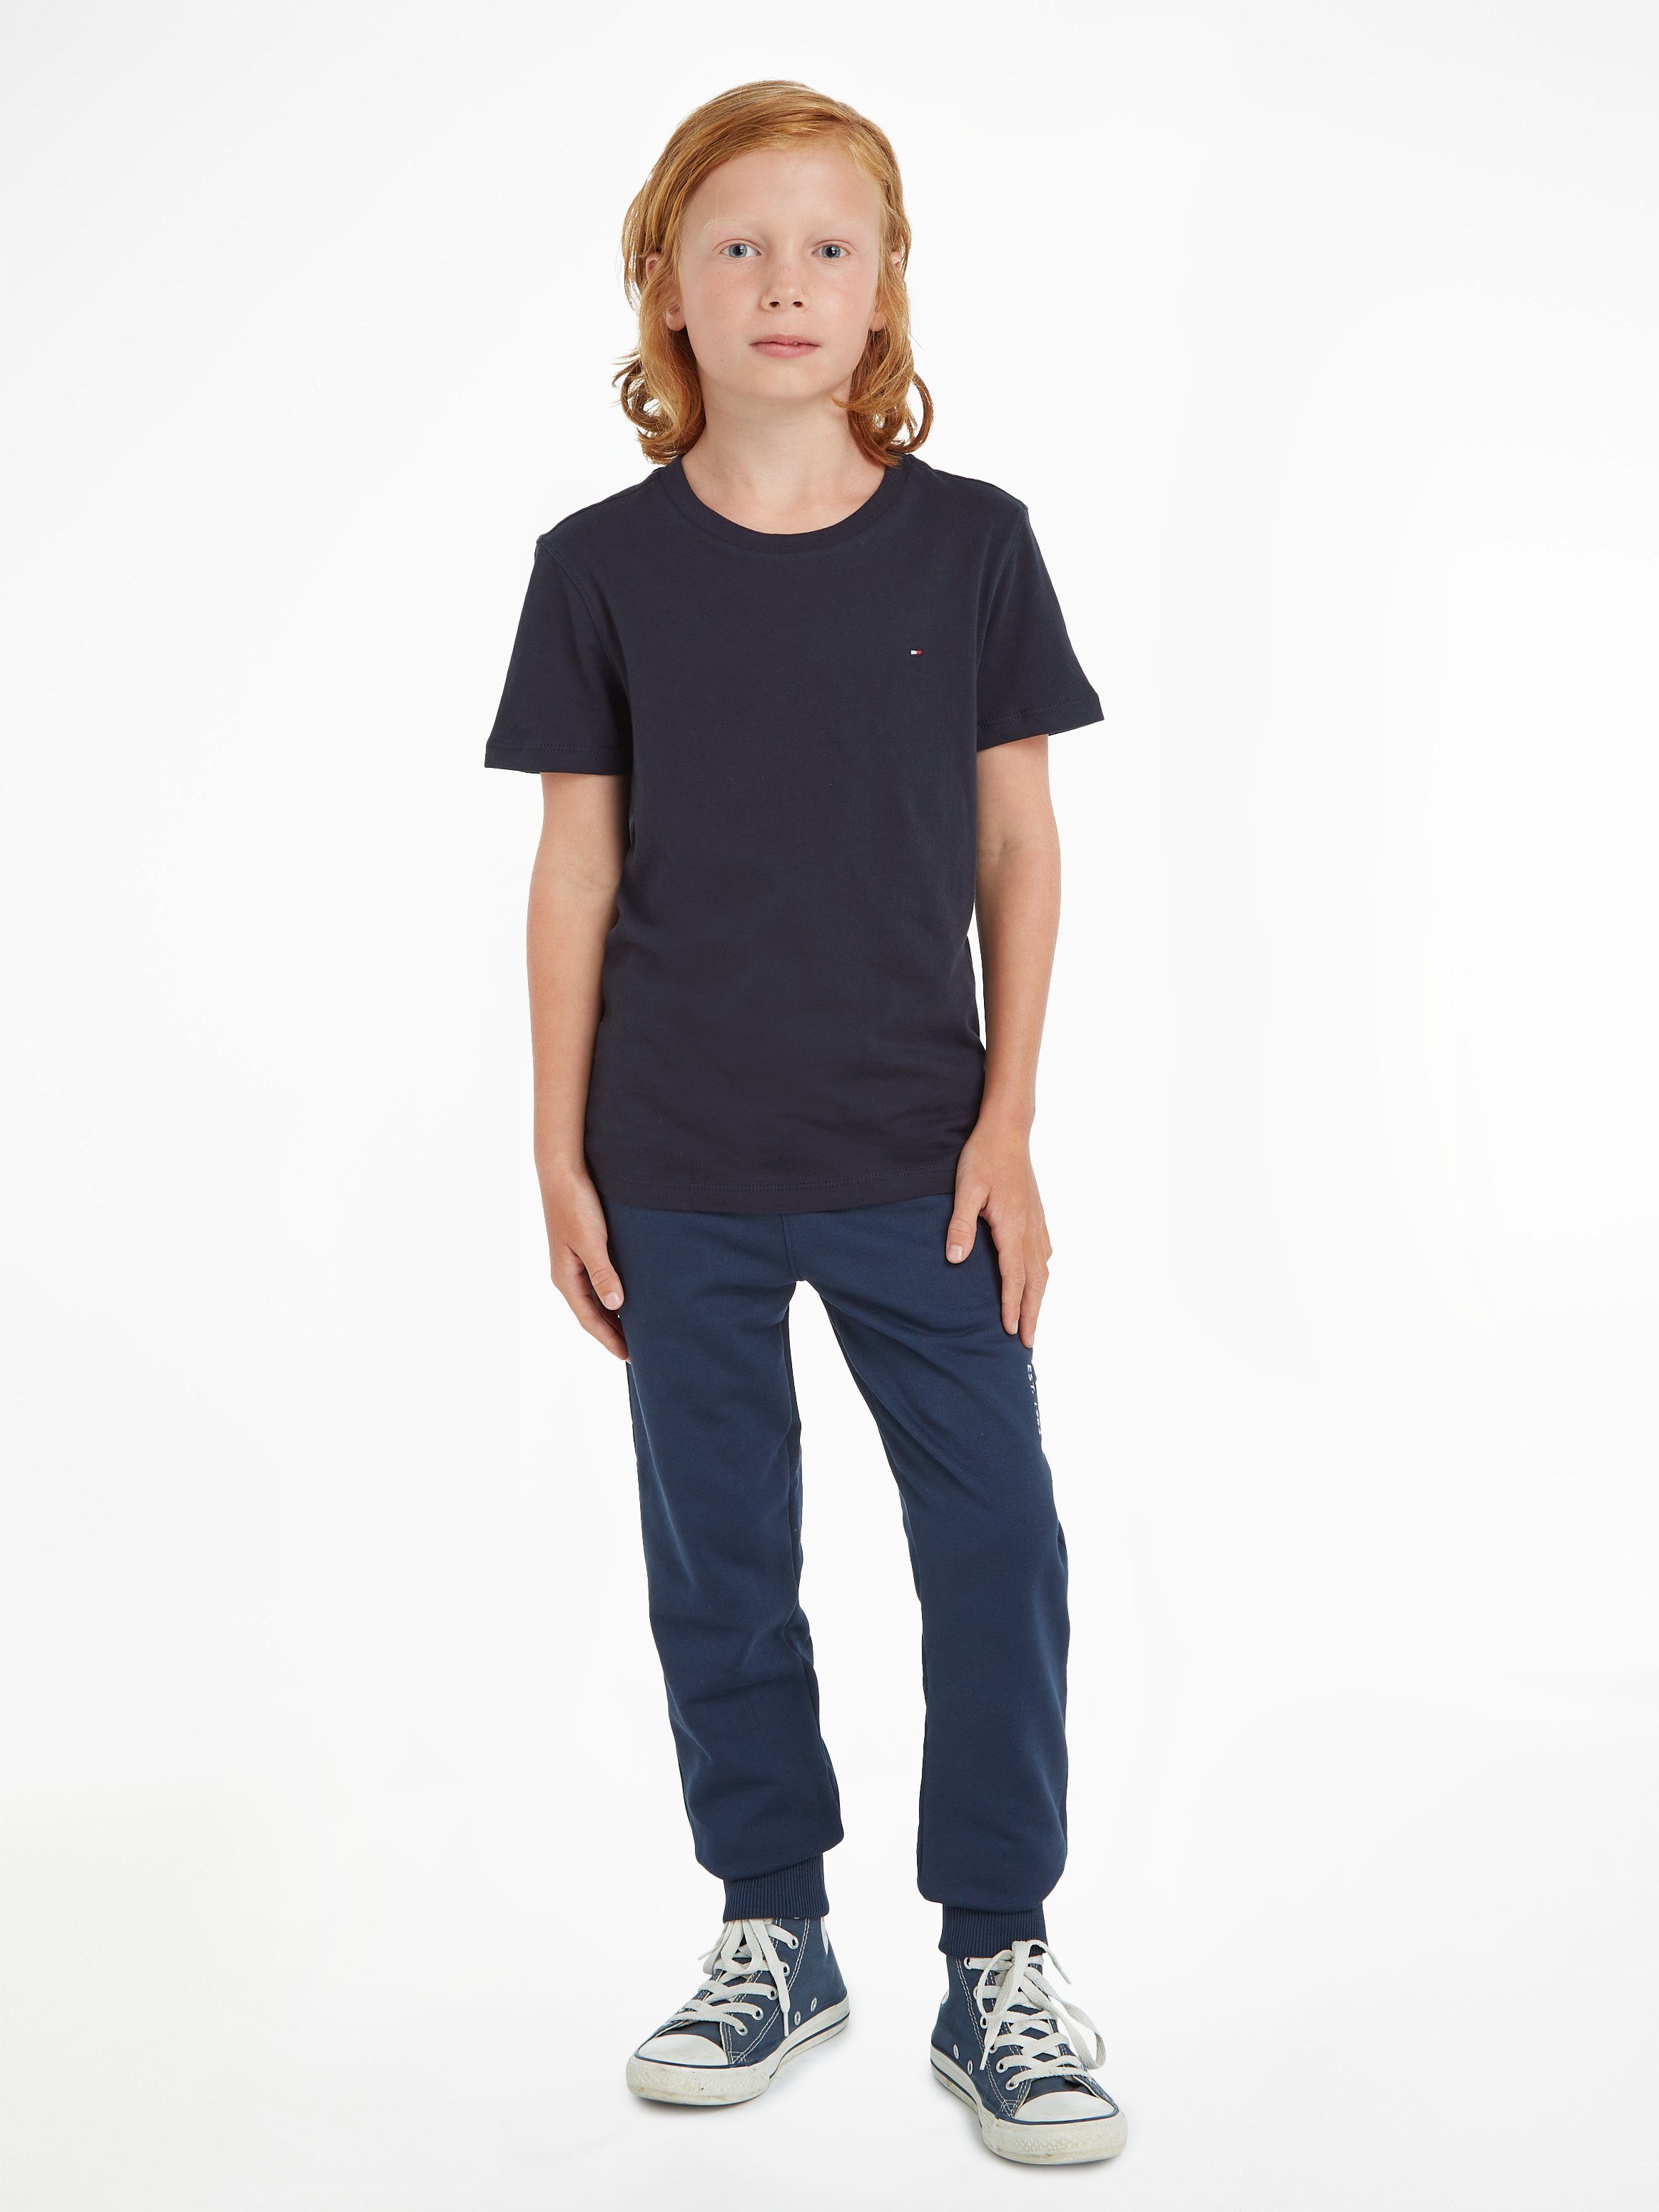 Junior KNIT am Stickerei hinten T-Shirt MiniMe,für Kids Label Jungen, Mit BOYS Hilfiger Tommy Ausschnitt CN Kinder und farbigem BASIC